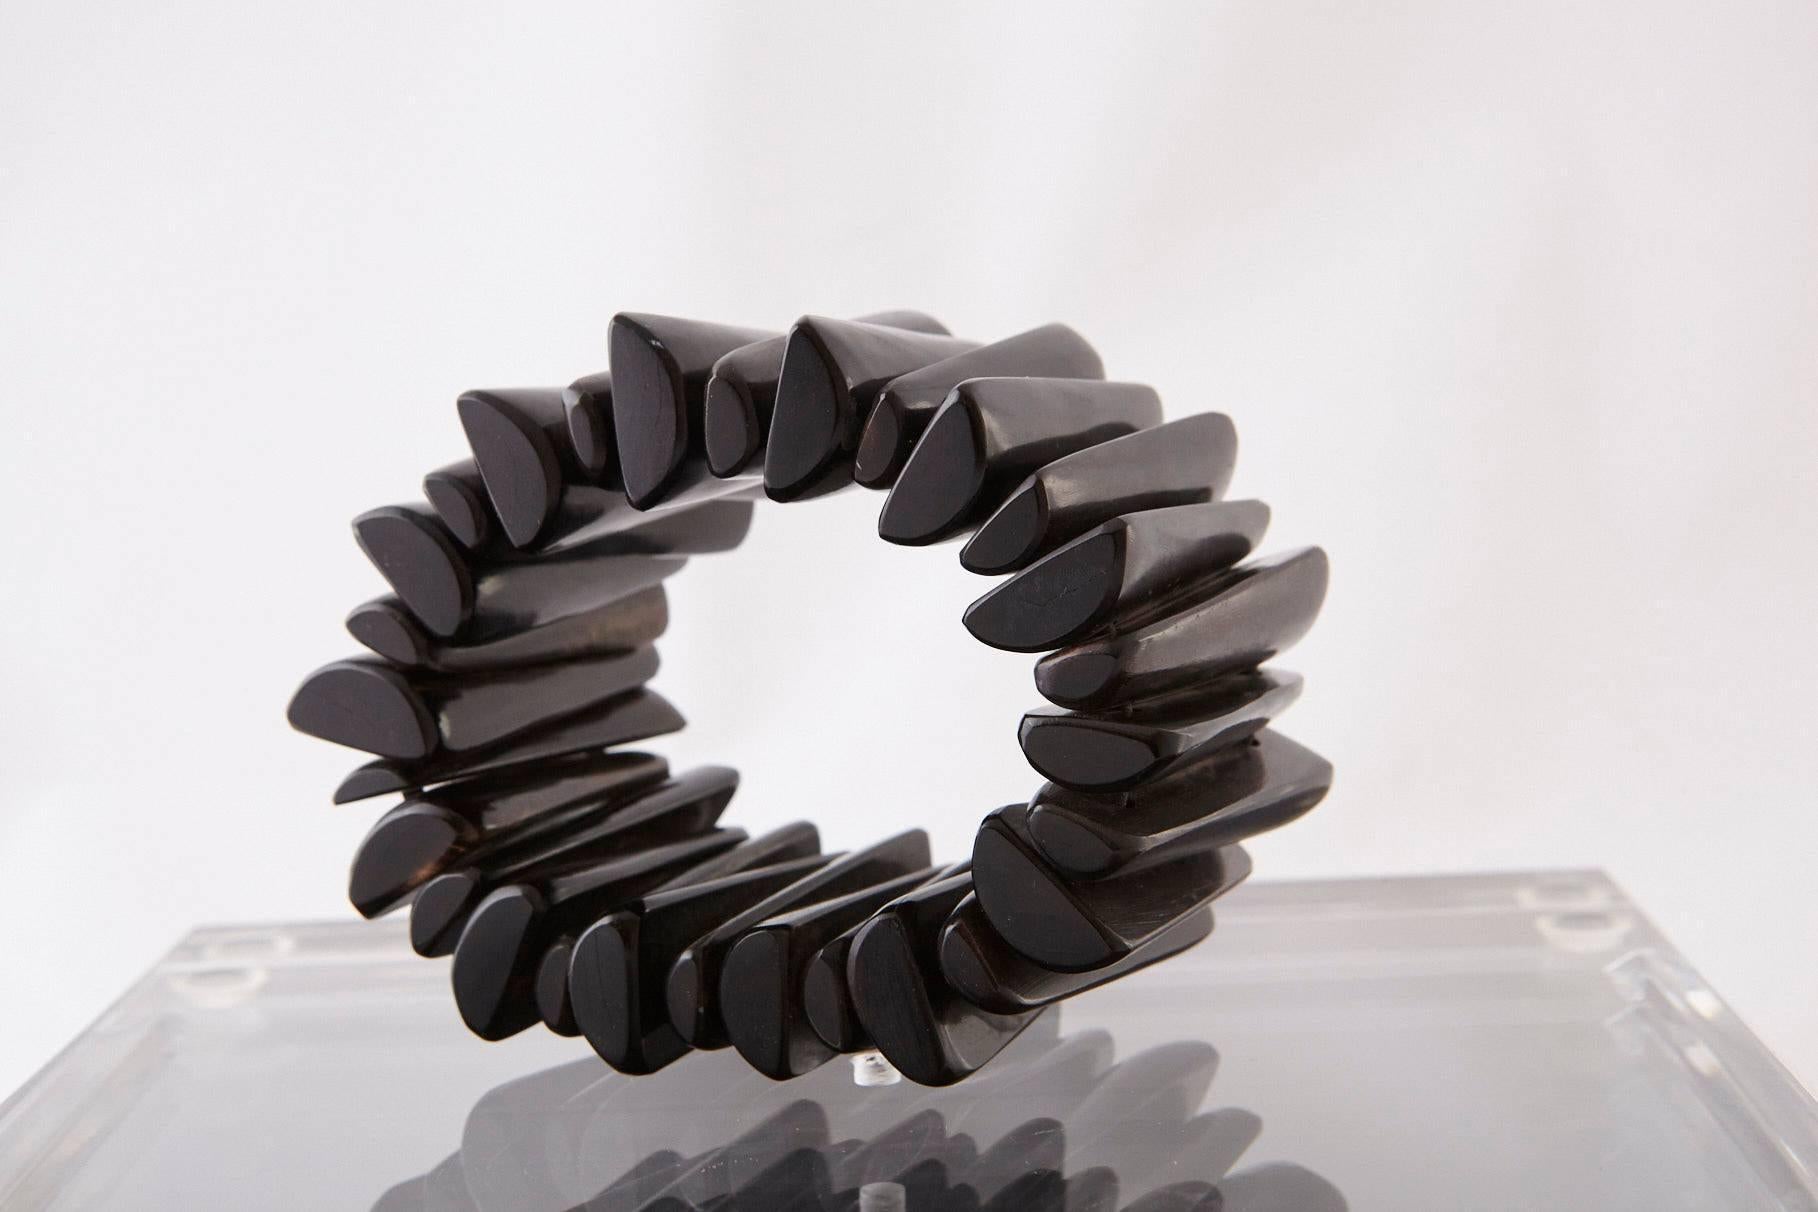 Superbe bracelet moderne en ébène sculpté à la main à partir de 28 morceaux d'ébène.

Mesure : ouverture de 2,25 pouces.